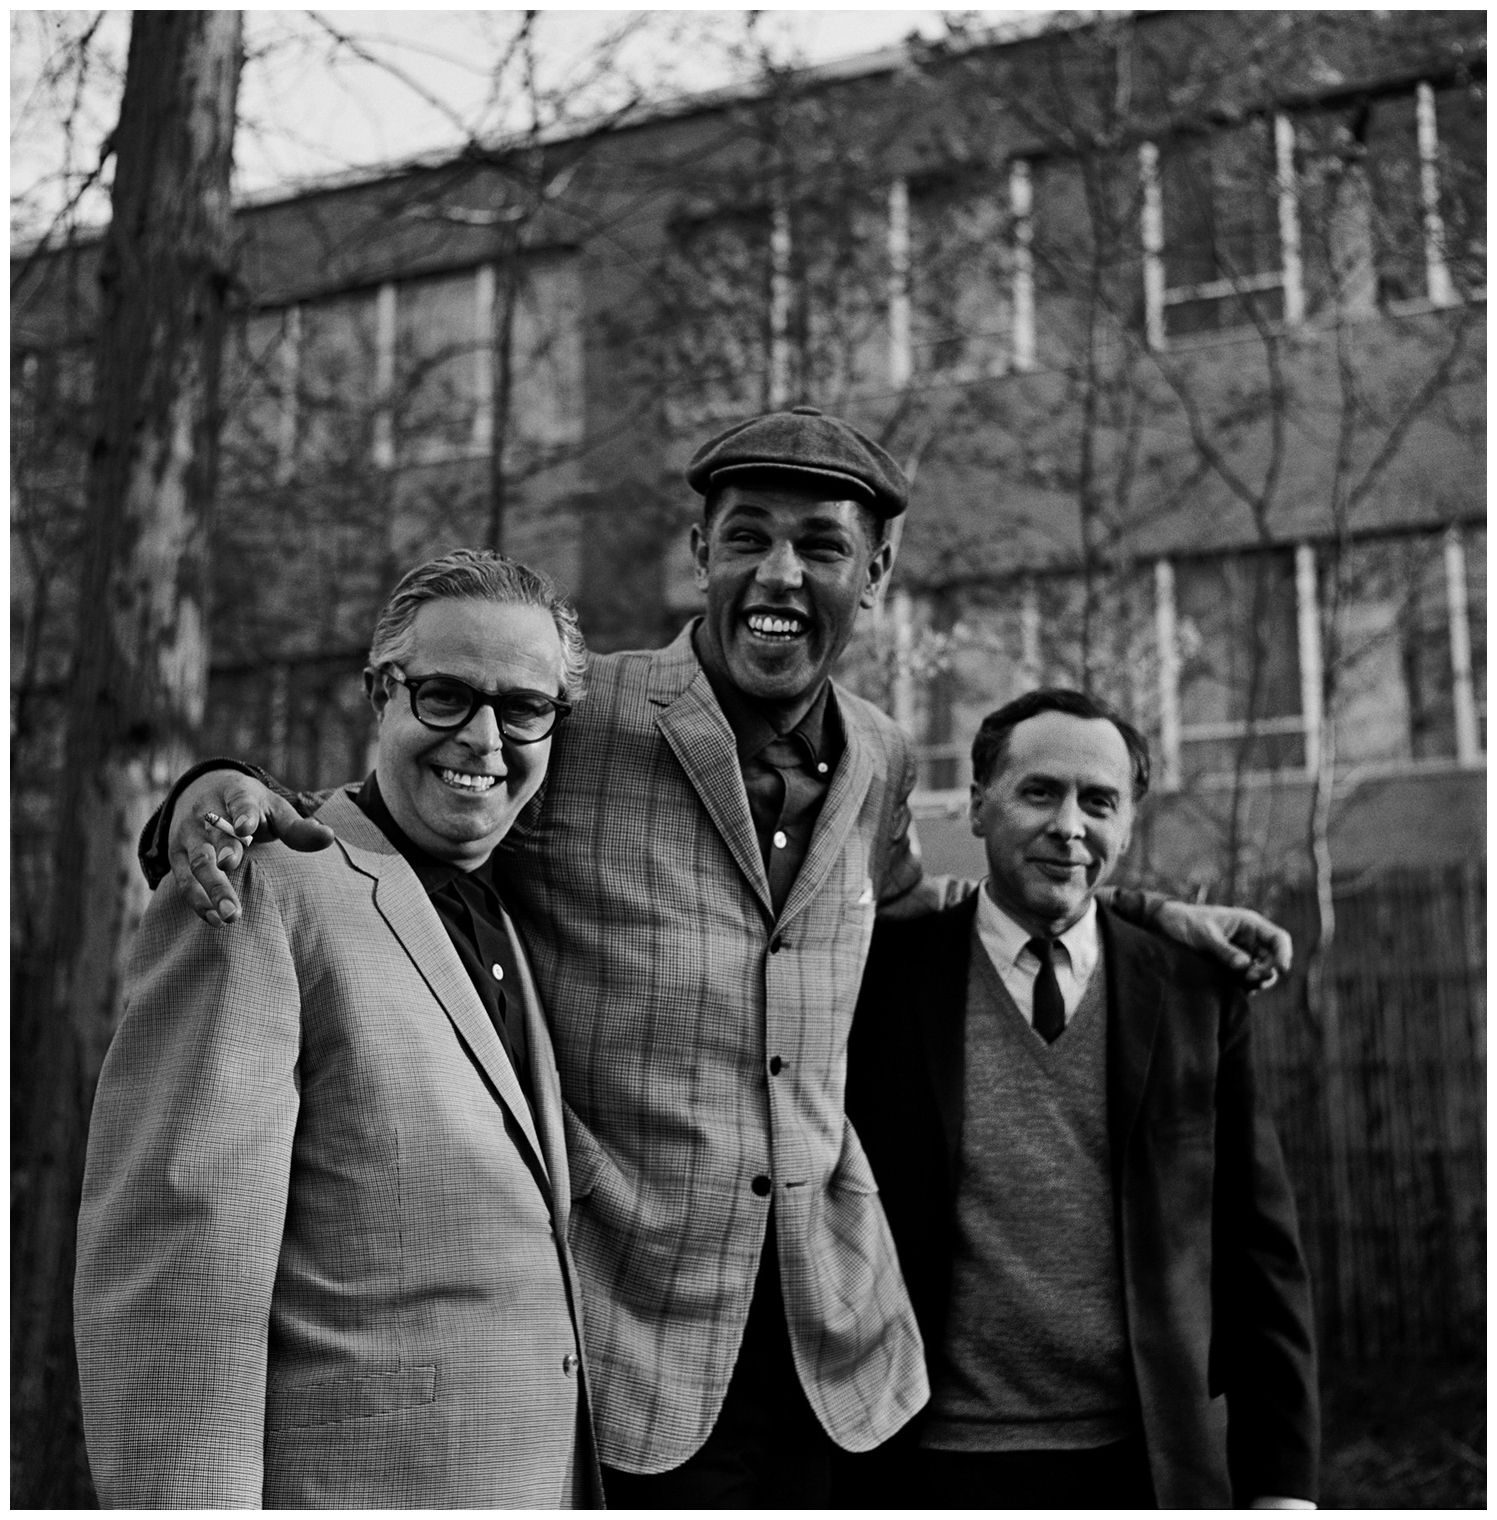 알프레드 라이언과 프랜시스 올프 그리고 테너 색소포니스트 덱스터 고든이 함께 한 사진 _ 1962년.jpg